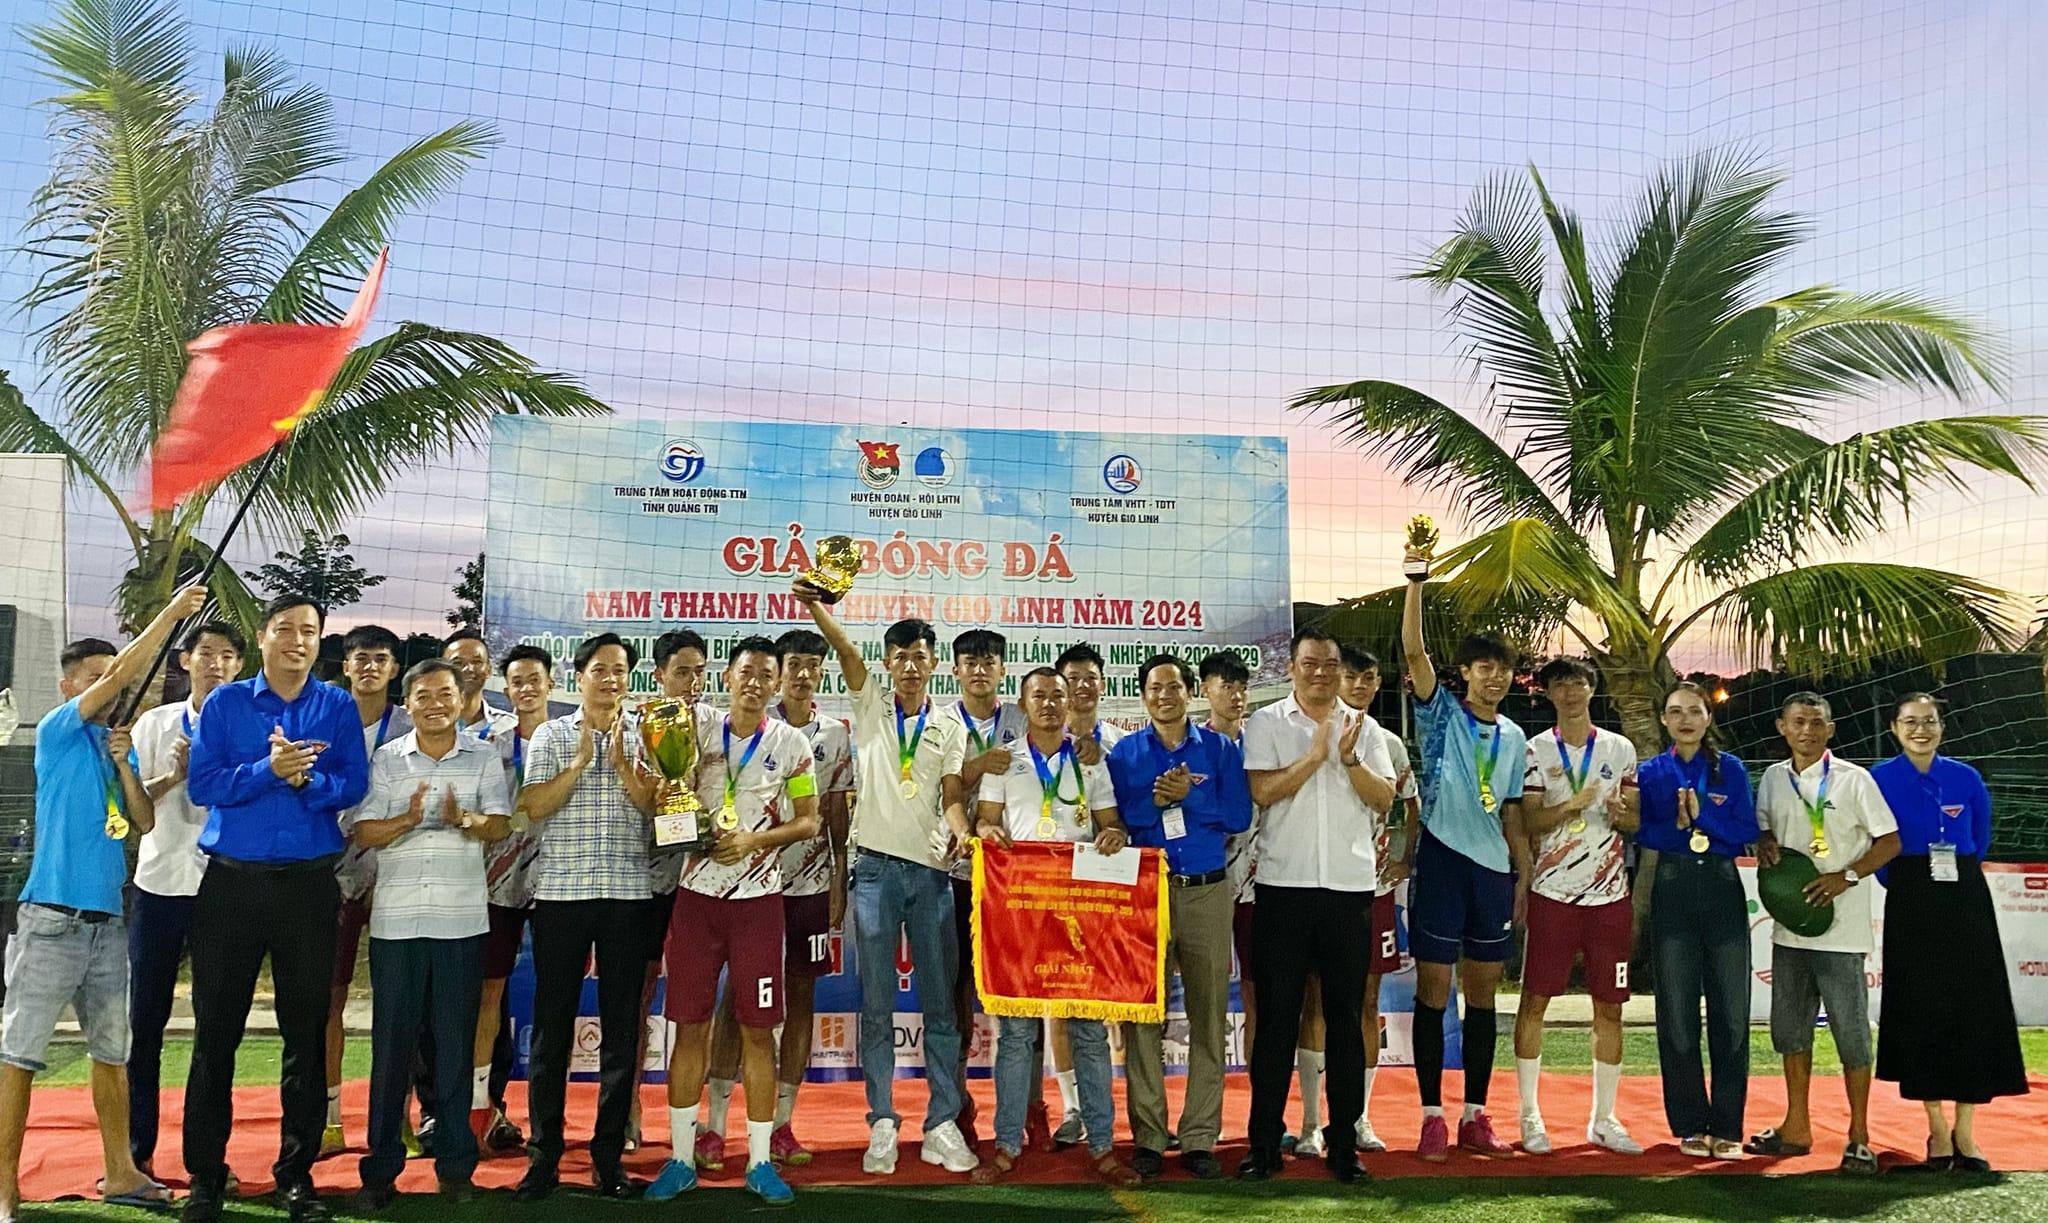 Bế mạc Giải bóng đá nam thanh niên huyện Gio Linh năm 2024